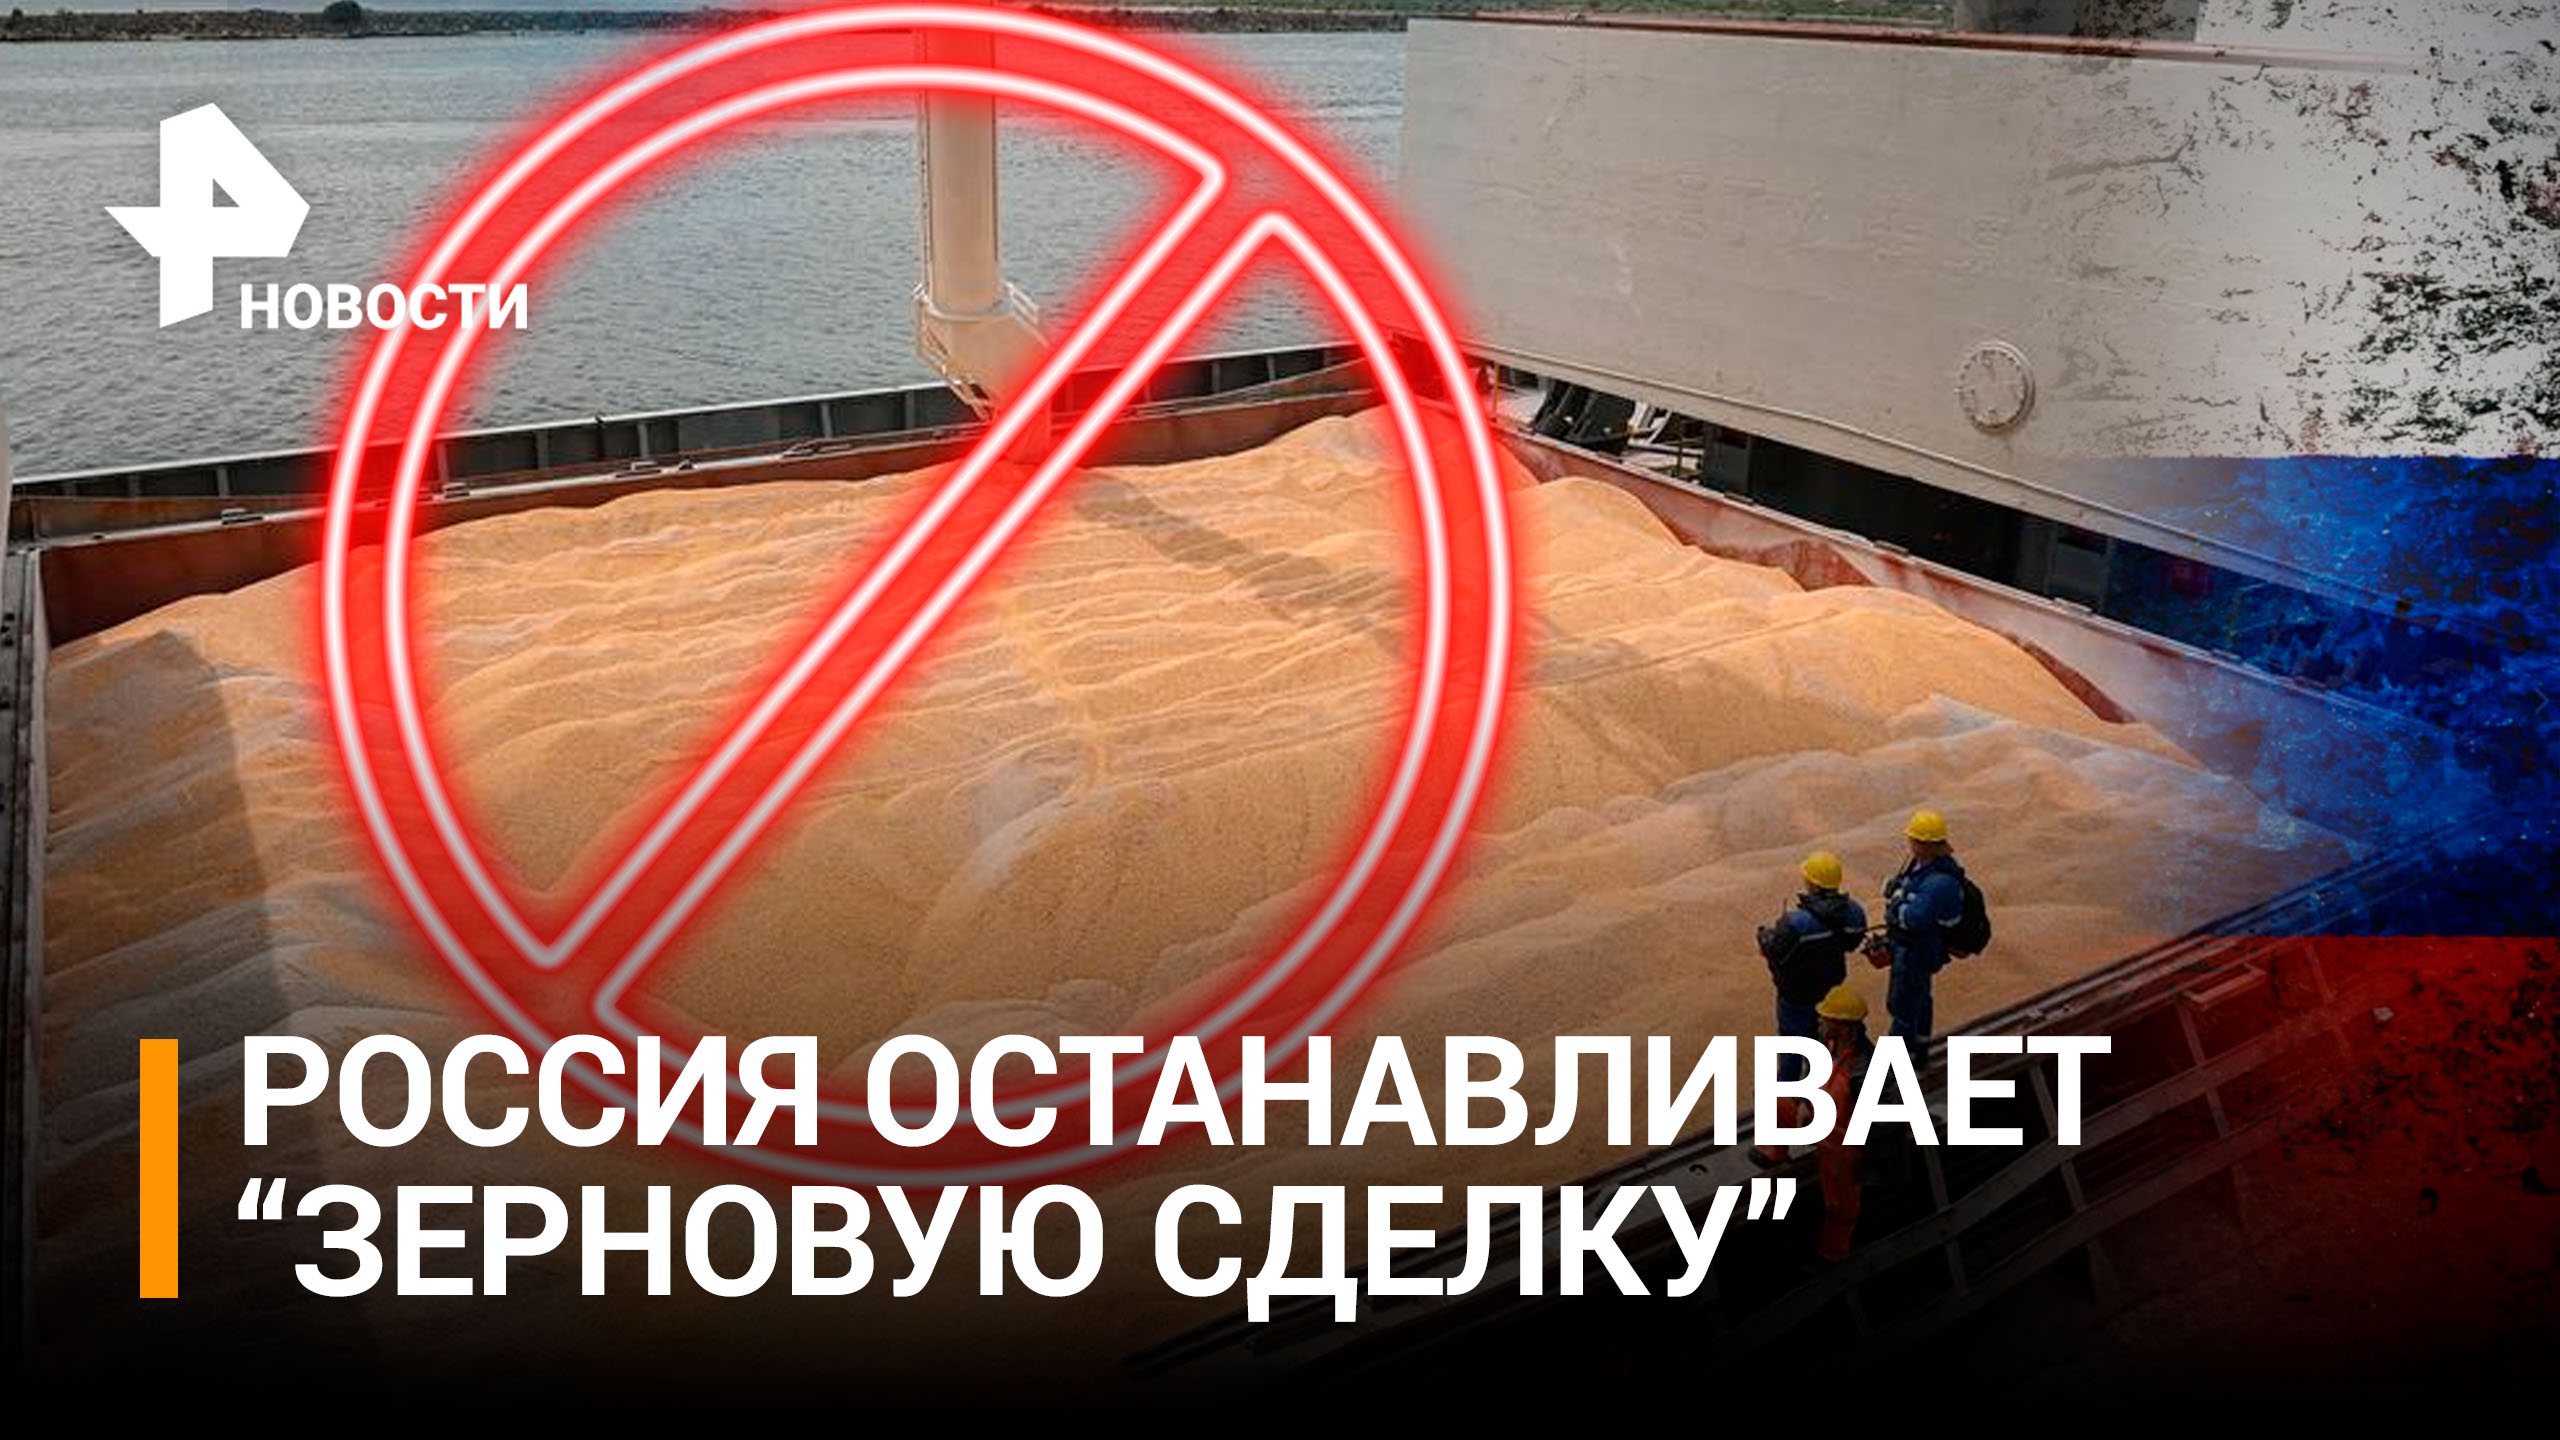 Россия приостановила зерновую сделку: главное / РЕН Новости